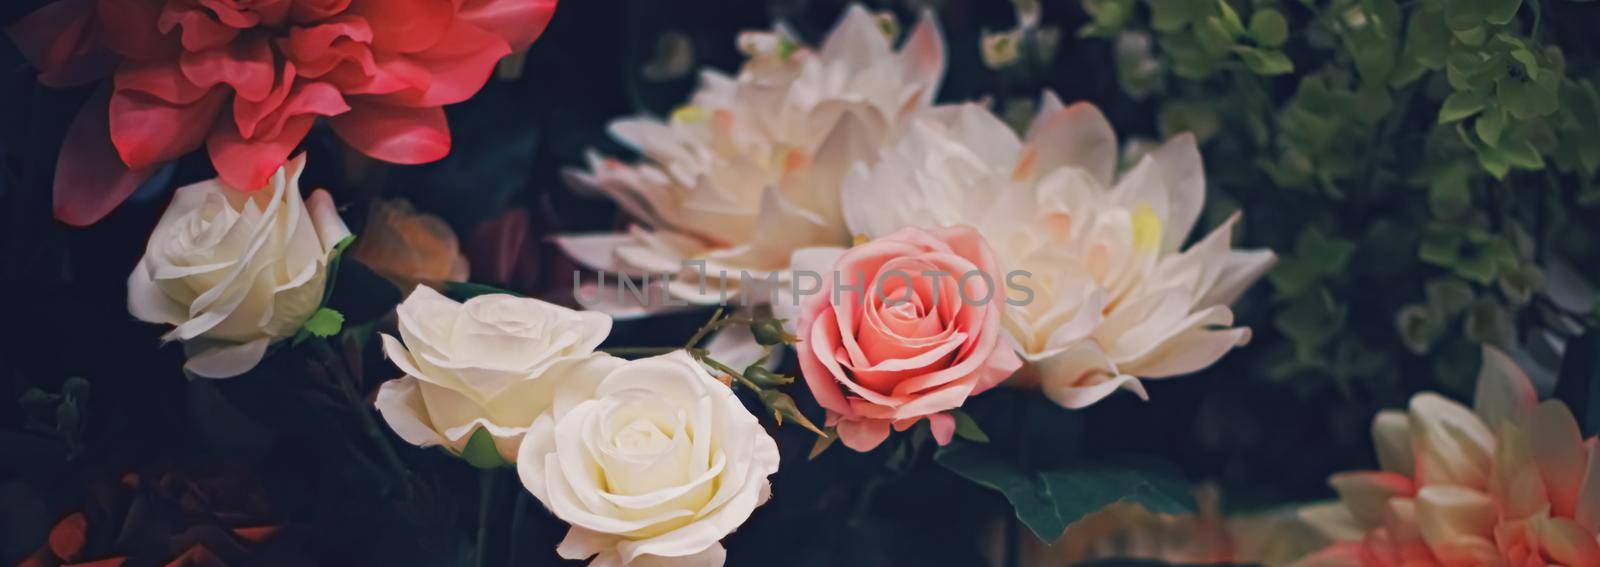 Flower arrangement as floral decoration for wedding and flowers shop decor concept